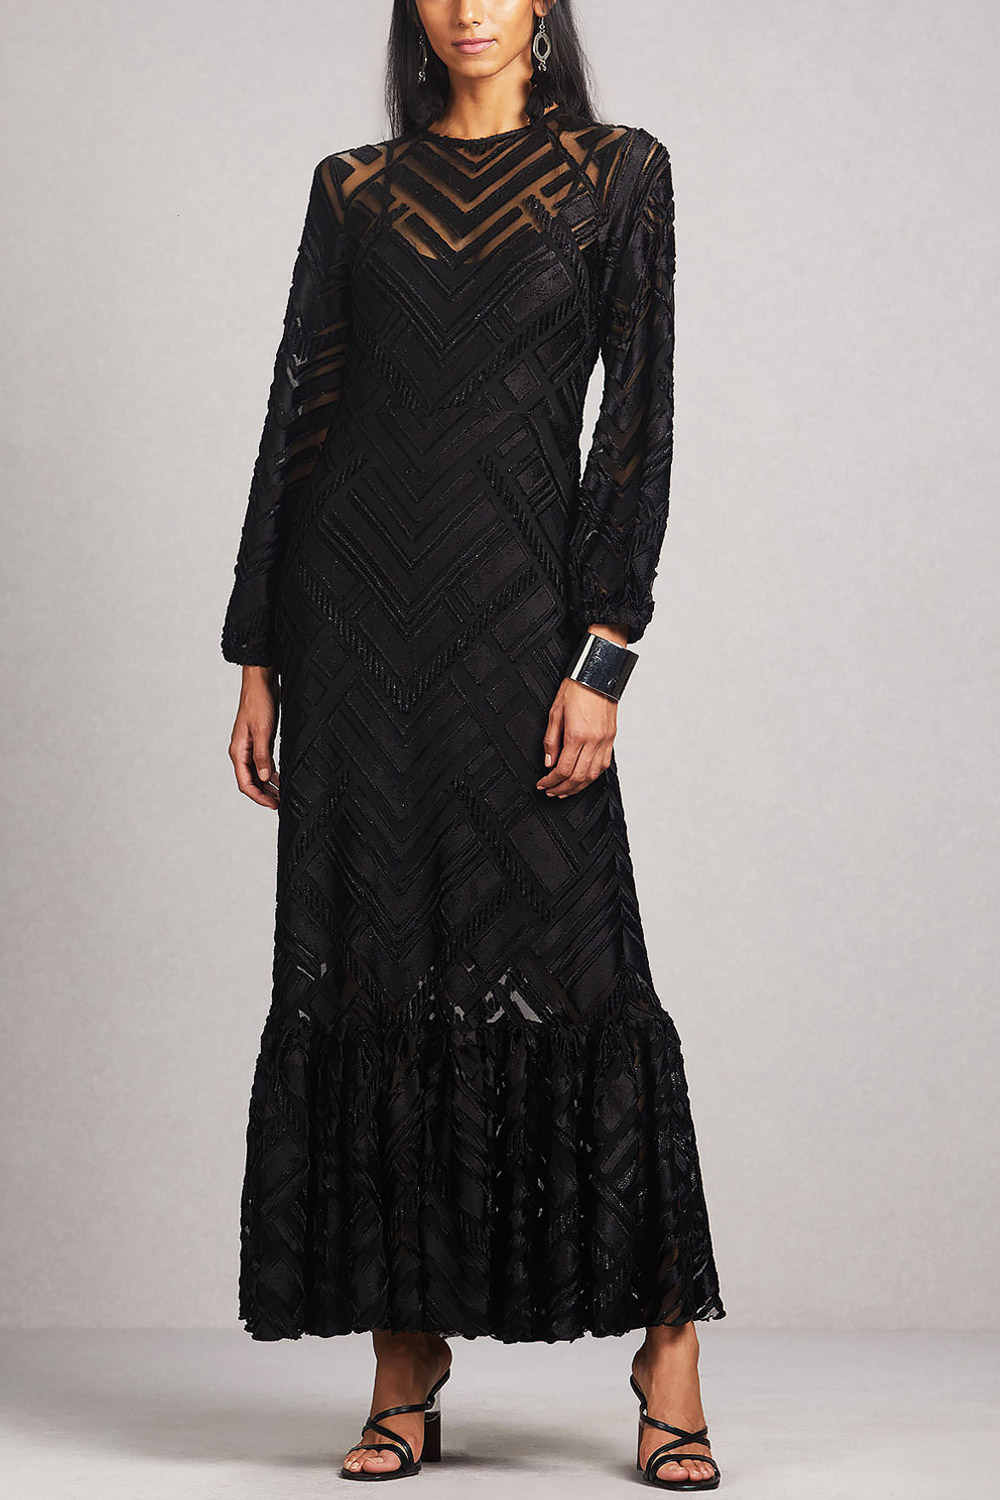 Black velvet dress designed by Ritu ...